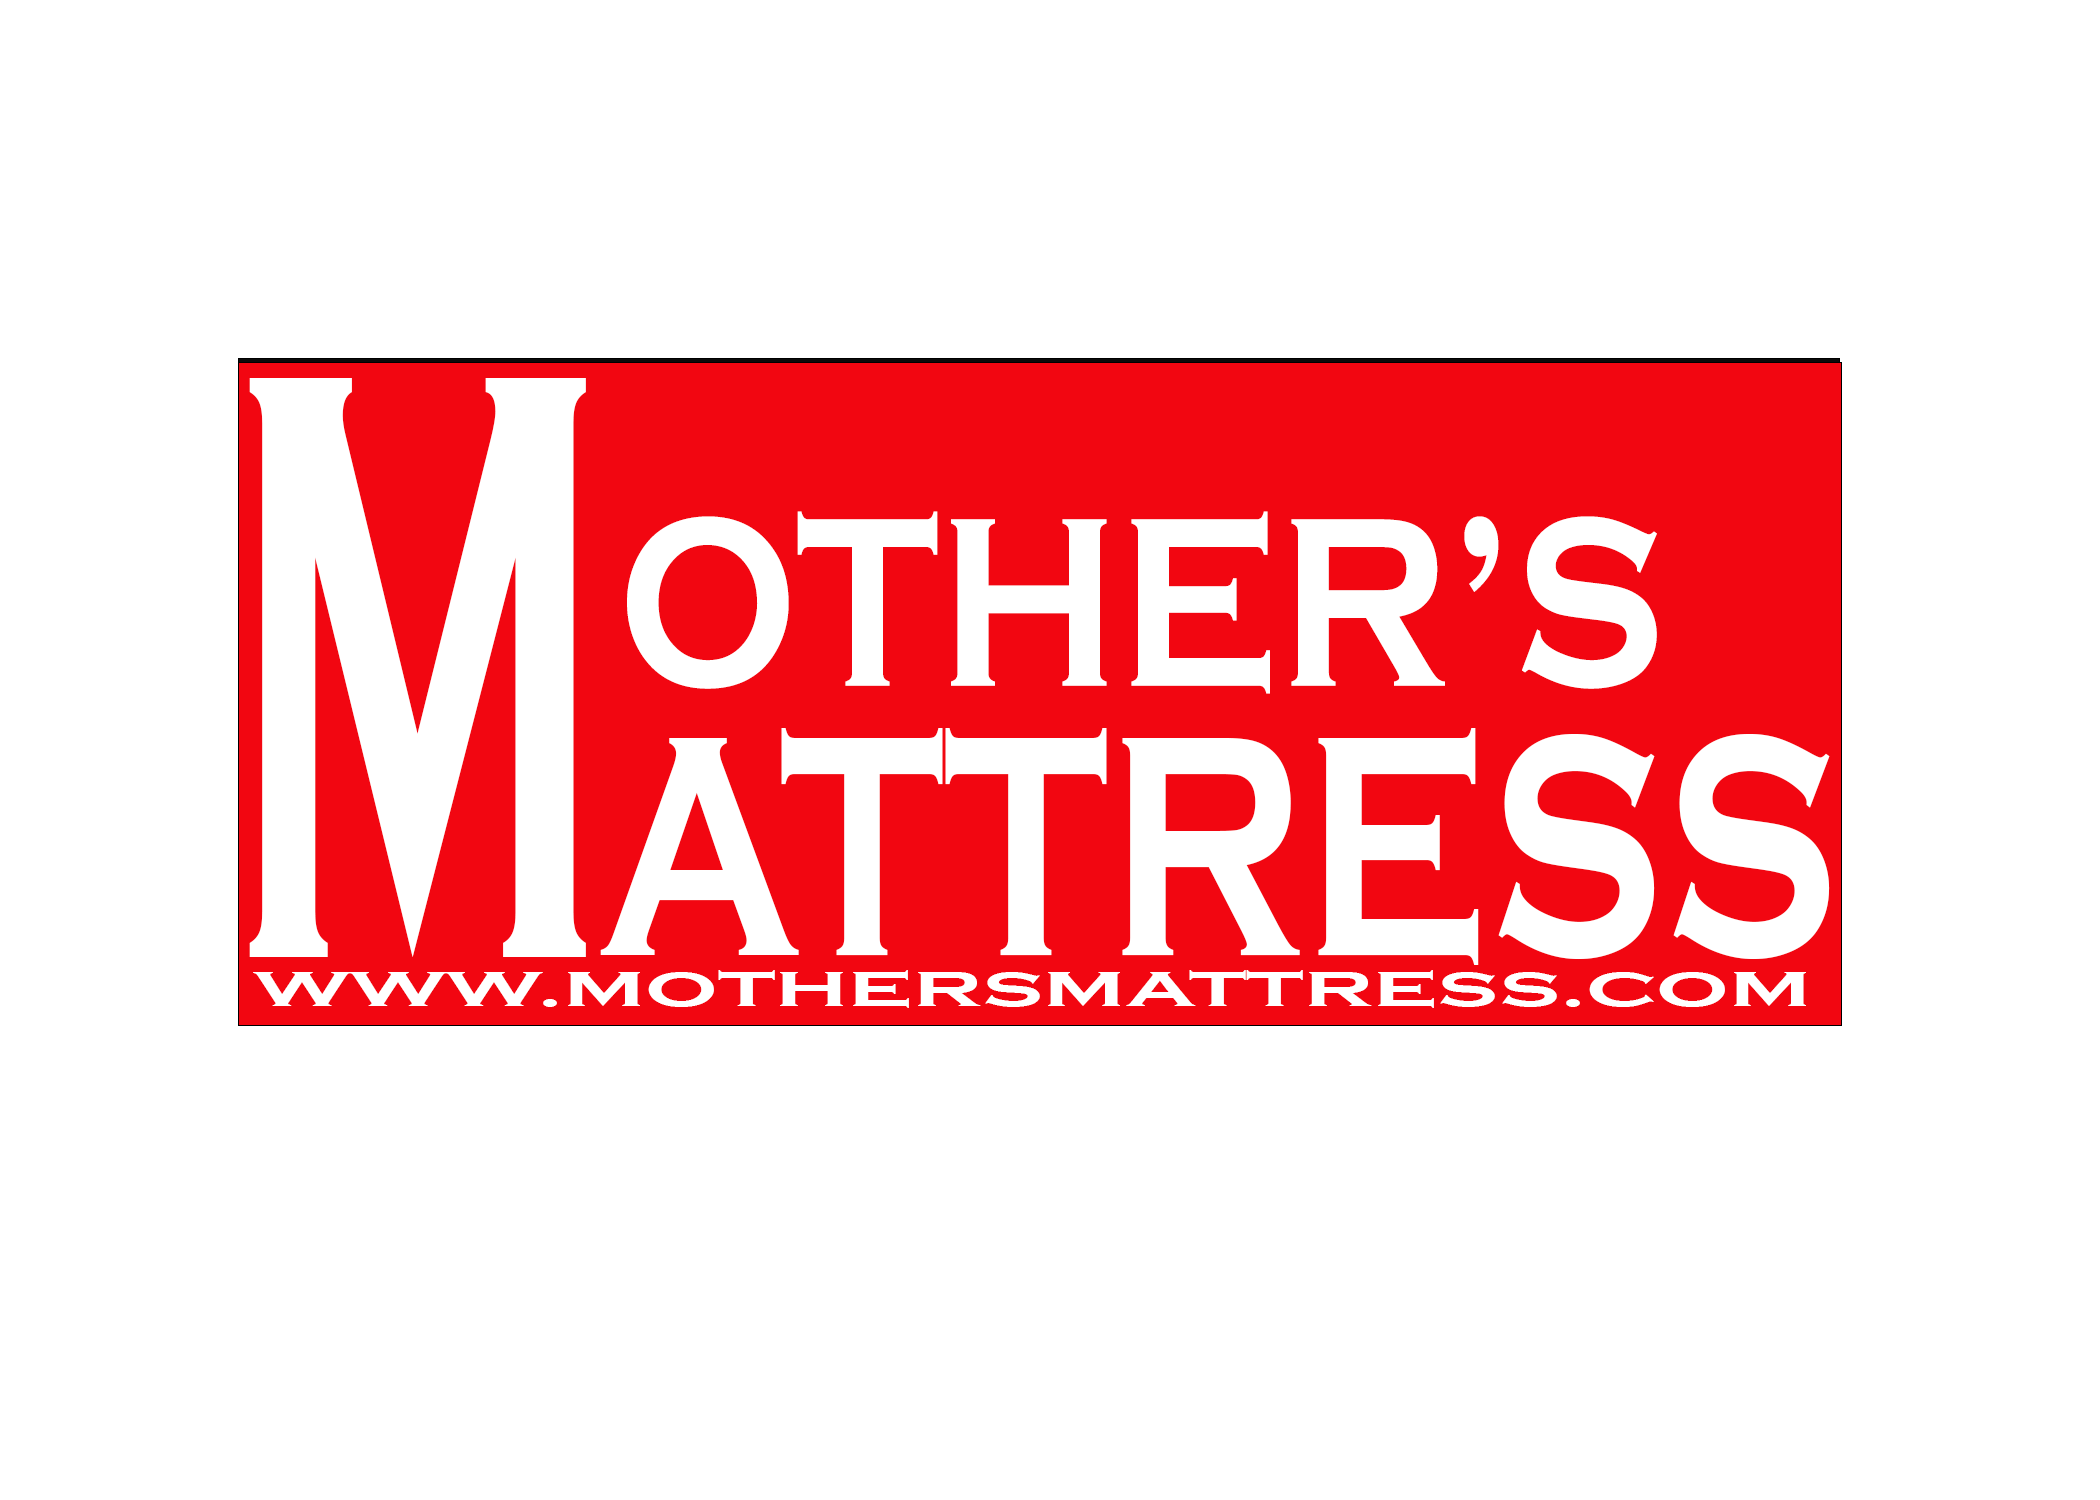 Mother's Mattress